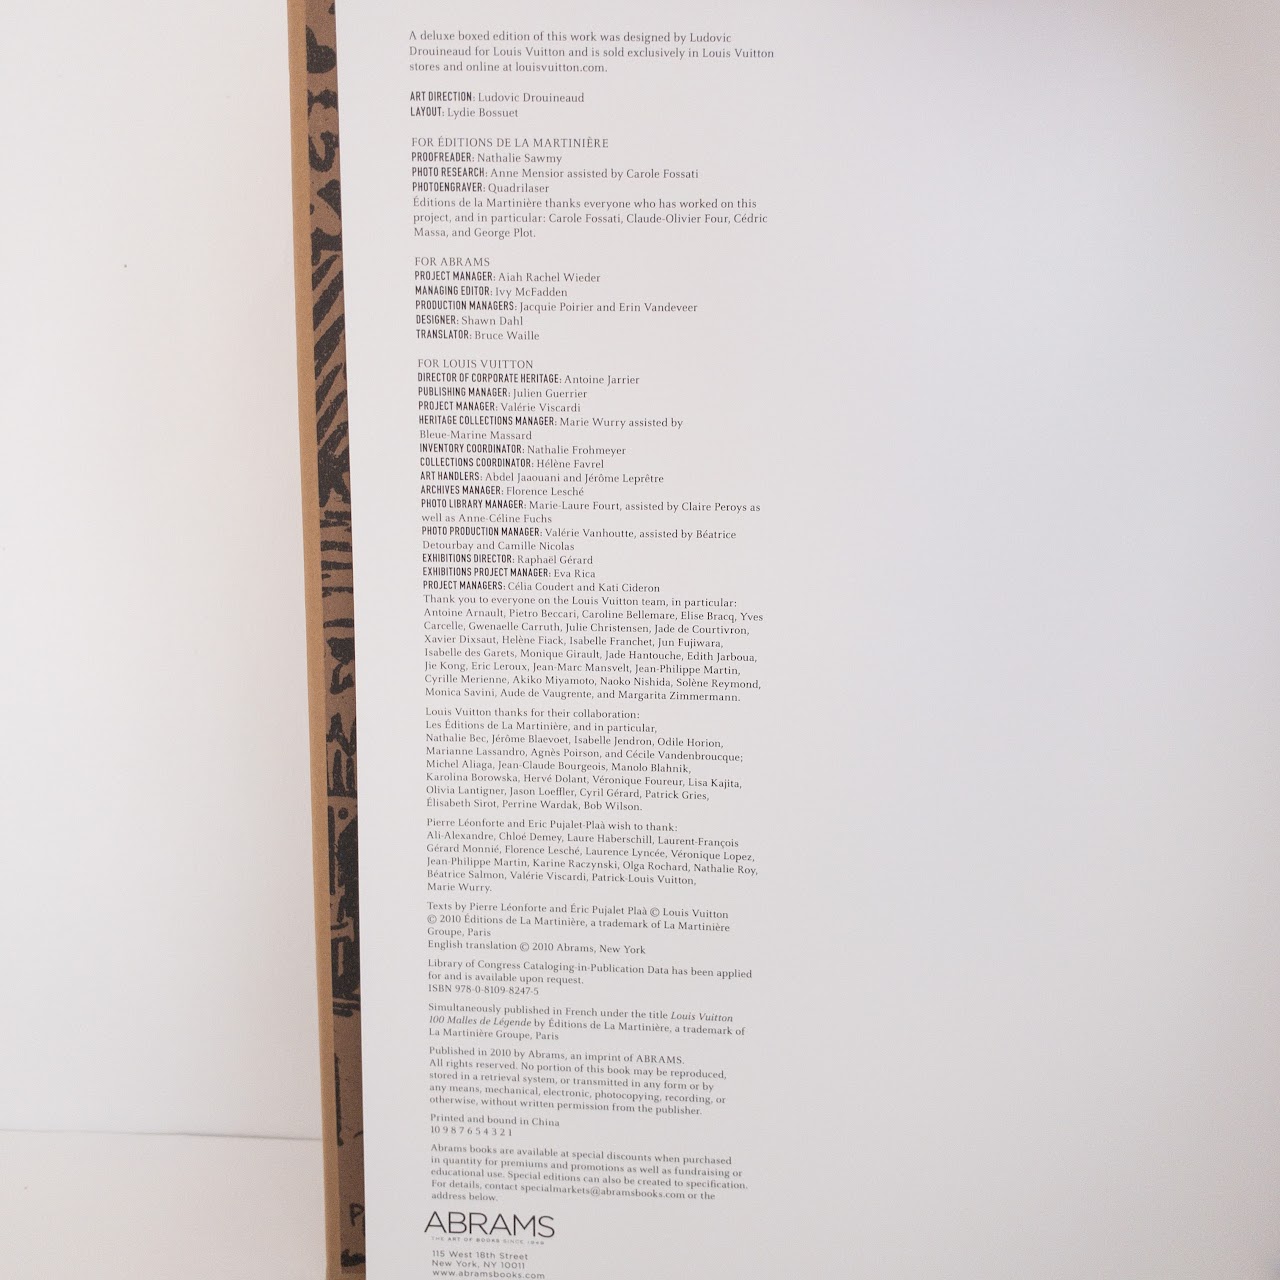 BIBLIO, 100 Legendary Trunks: Louis Vuitton by Léonforte, Pierre, Éric  Pujalet-Plaà, Florence Leschám Marie Wurry, Hardcover, 2010, Abrams